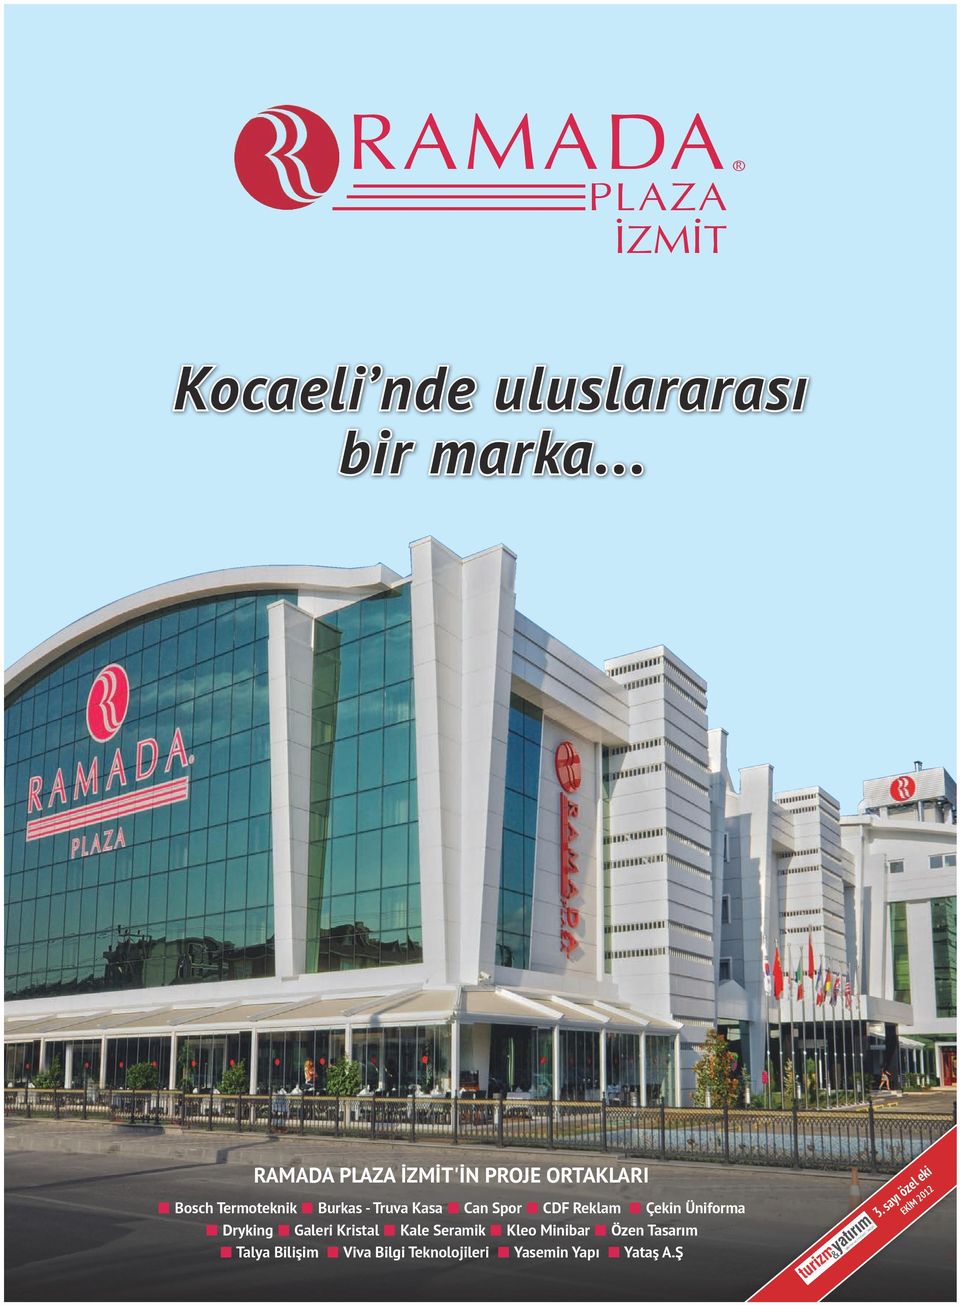 Can Spor CDF Reklam Çekin Üniforma Dryking Galeri Kristal Kale Seramik Kleo